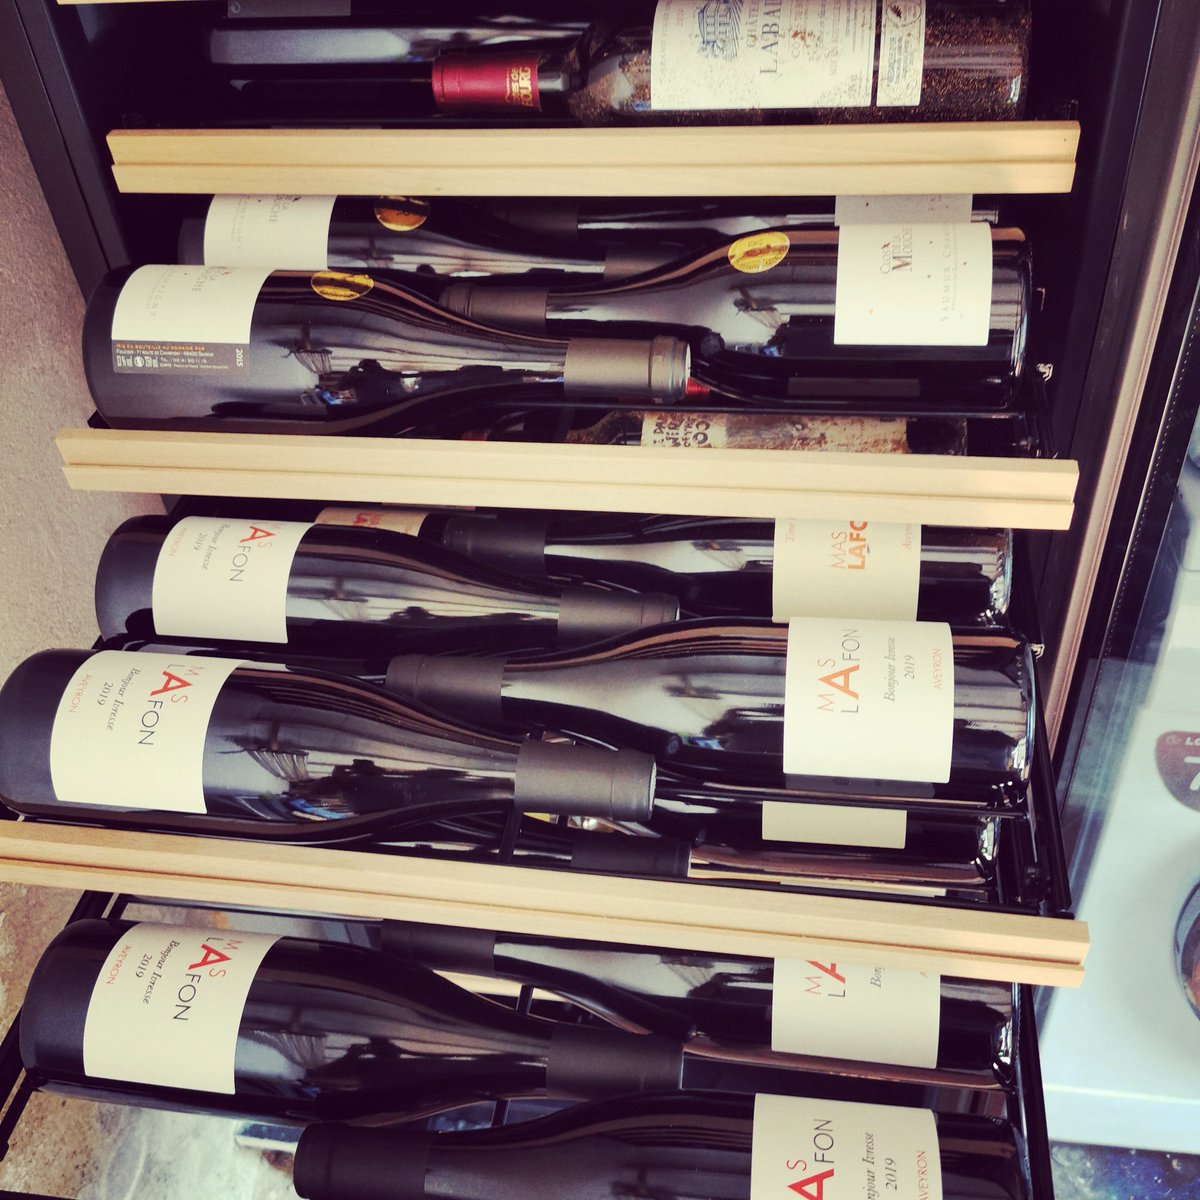 Plus de question à se poser, composez avec les services des @vinsurmesure une cave qui vous permettra de découvrir le vin, l'apprécier quand il est prêt a boire, le savourer entre amis.
#vinprestige #toulouse  #exclusivité #cestunmetier #sommeliers #servicesurmesure #occitanie